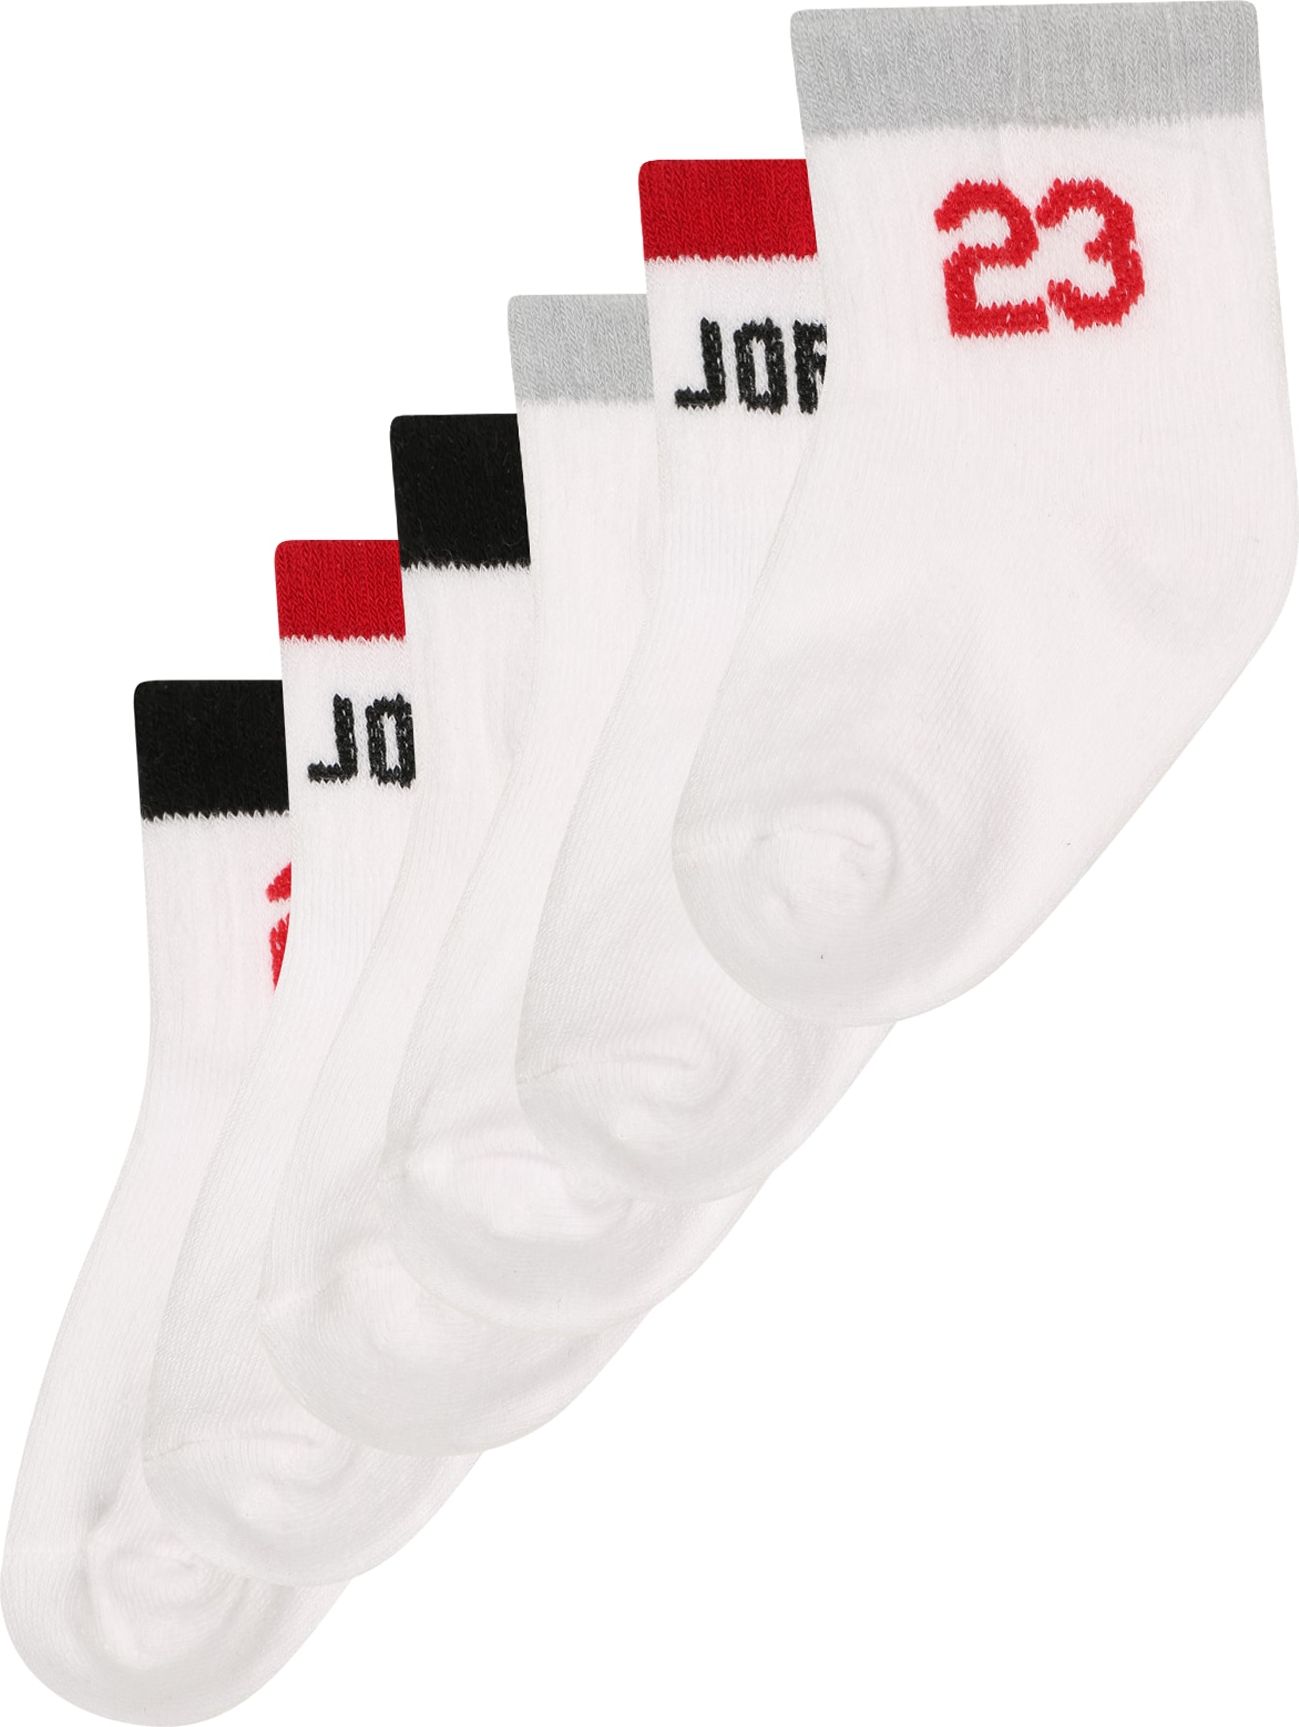 Jordan Ponožky šedá / červená / černá / bílá